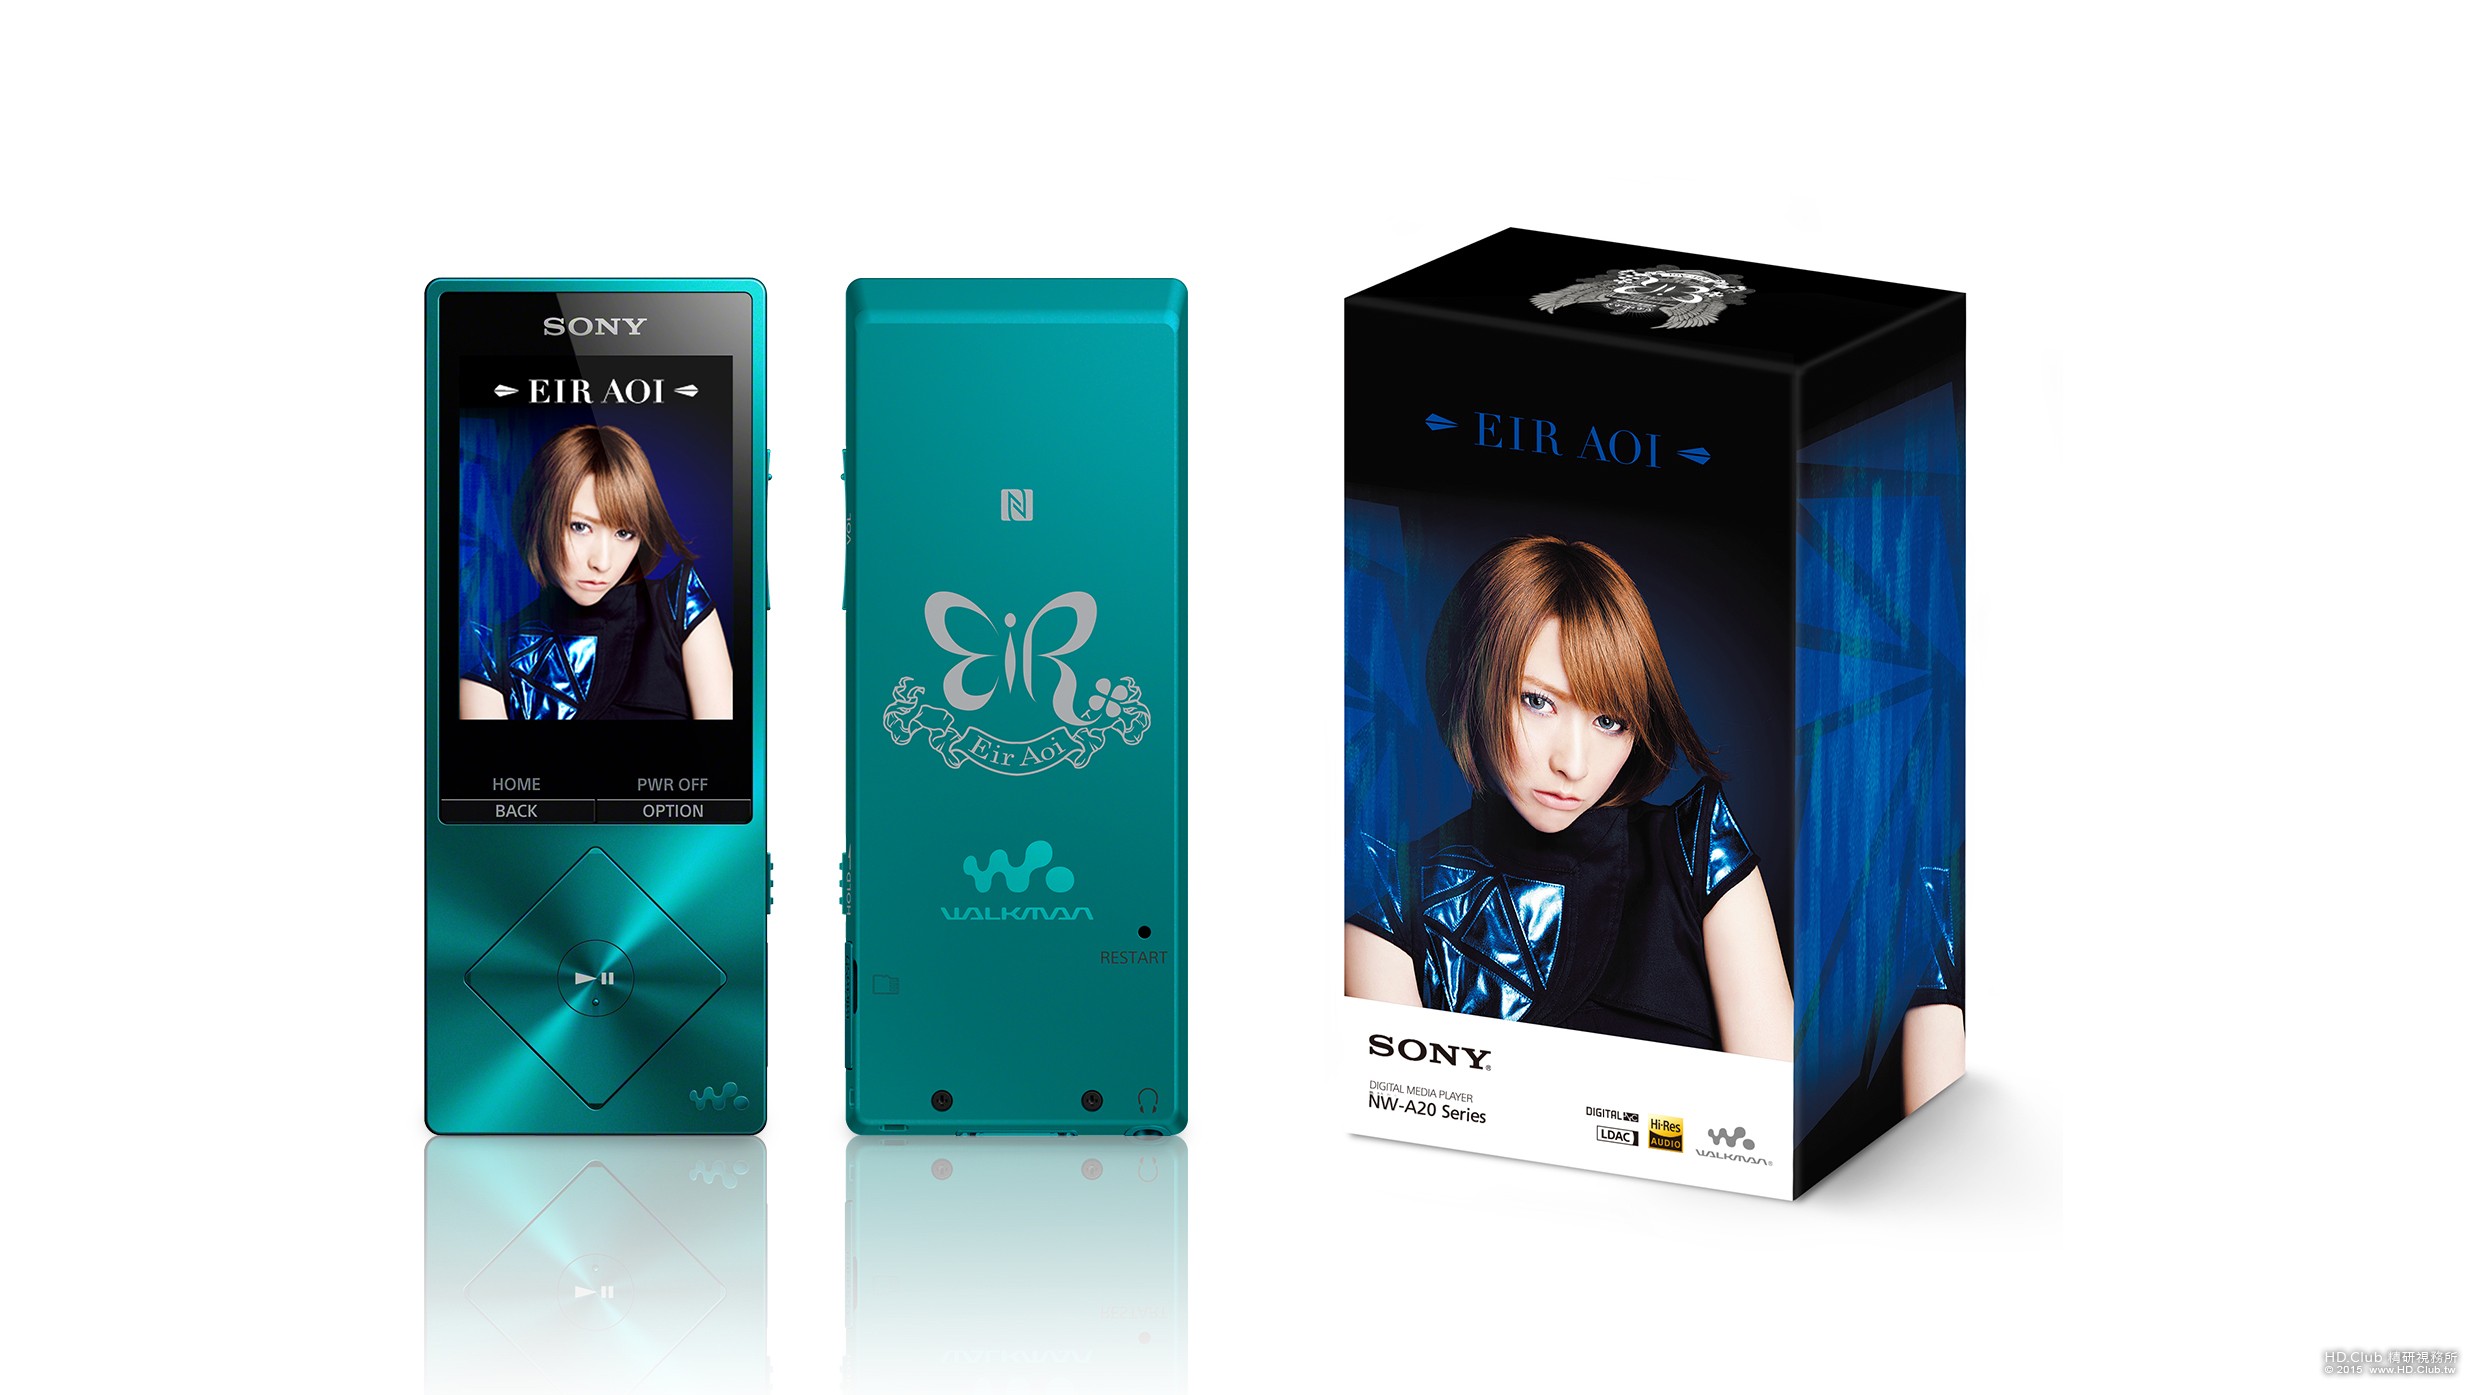 Sony Walkman NW-A25  動漫歌姬藍井艾露特別版在台限量販售。.jpg